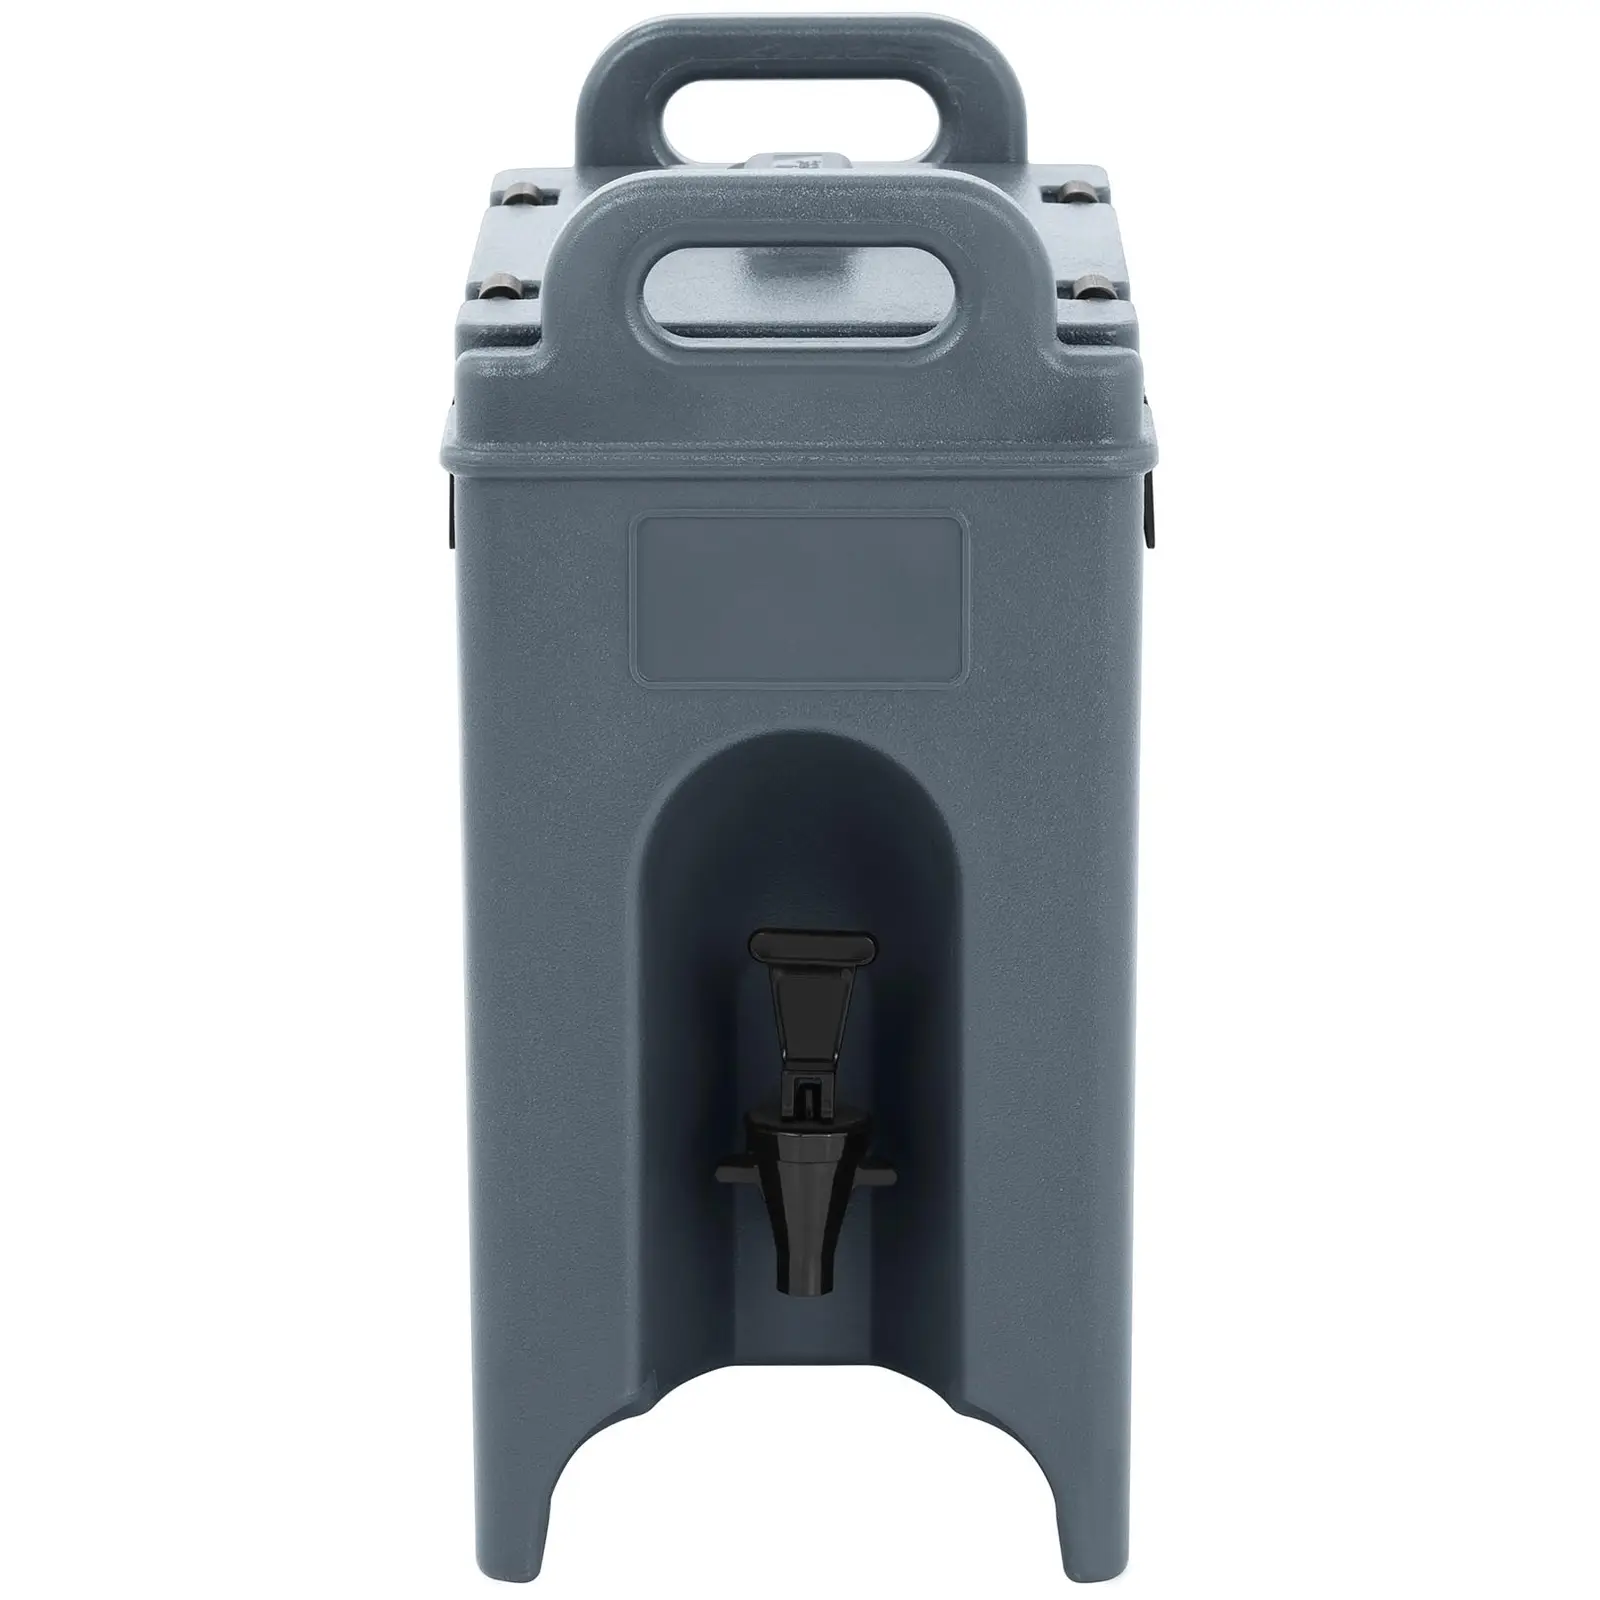 Thermogetränkebehälter - heiß & kalt - mit Ablasshahn - 9,4 L